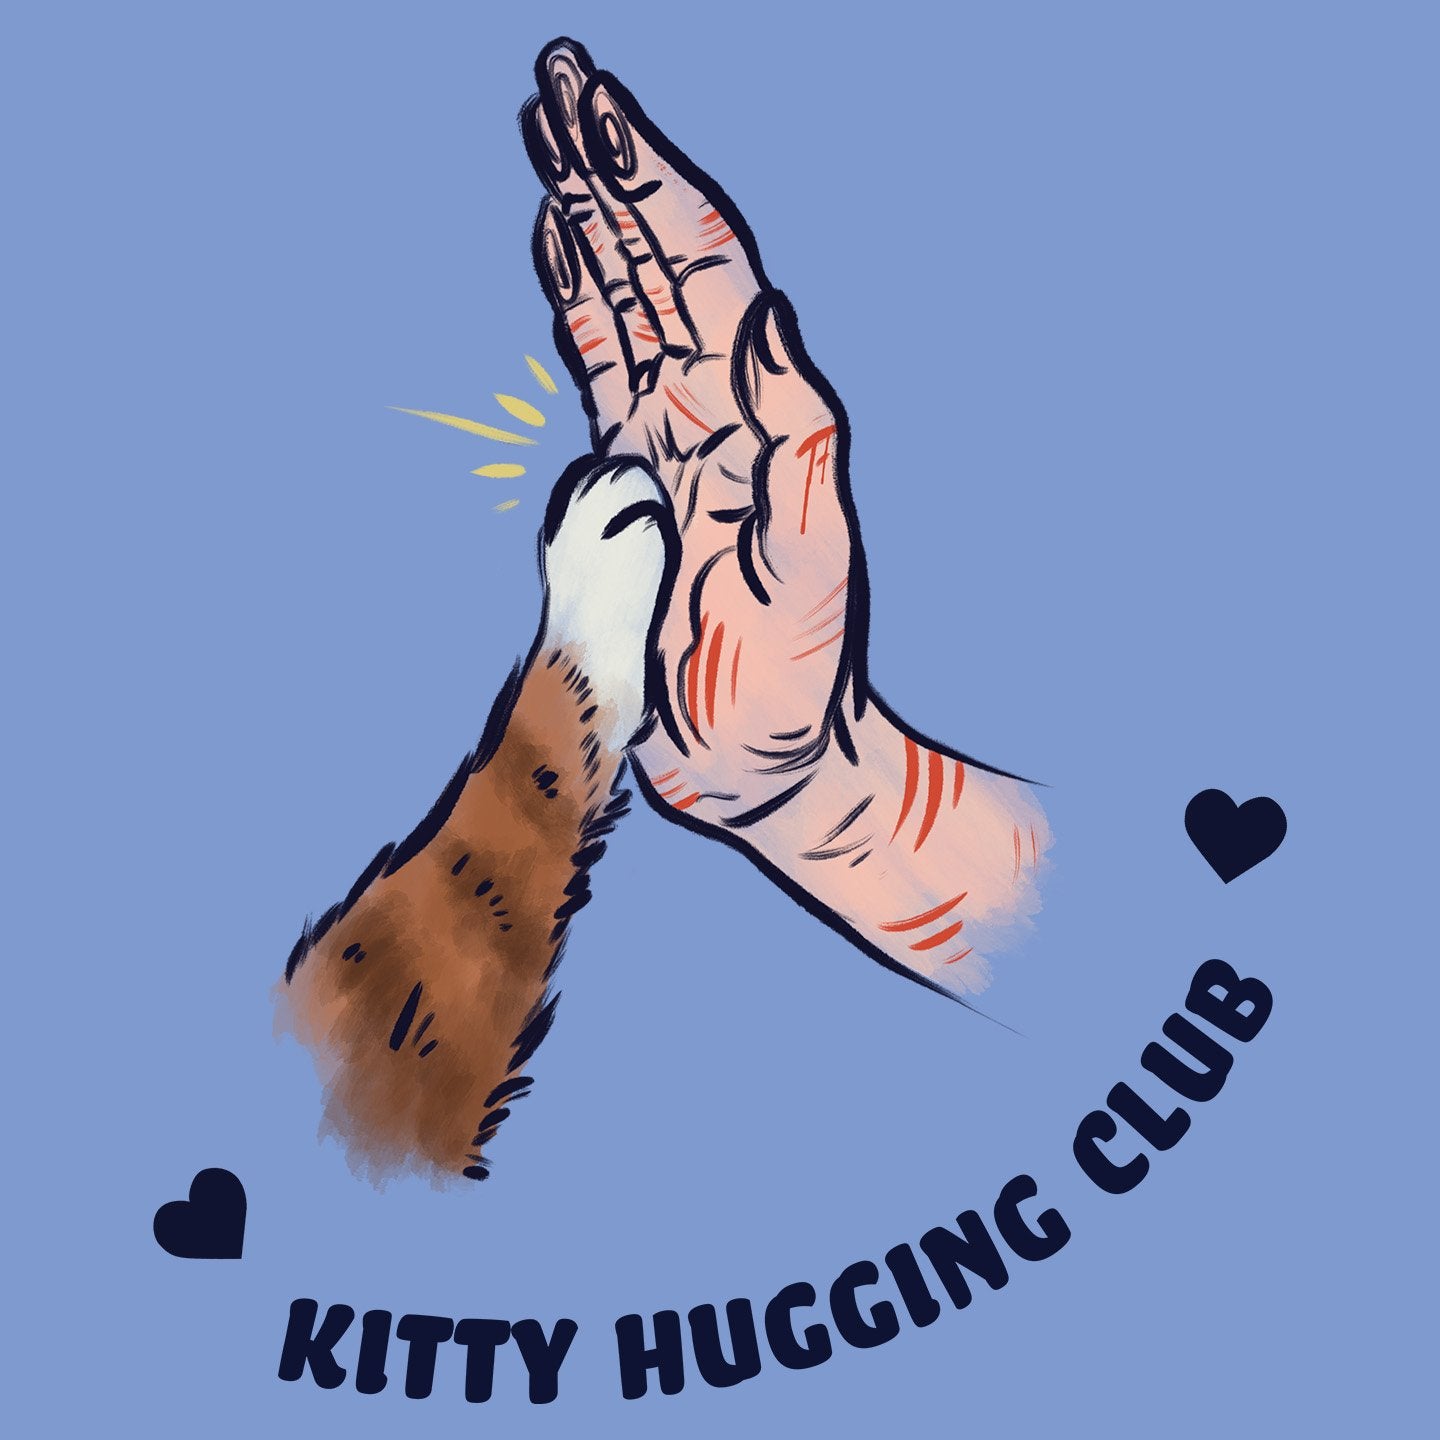 Kitty Hugging Club - Women's Tri-Blend T-Shirt